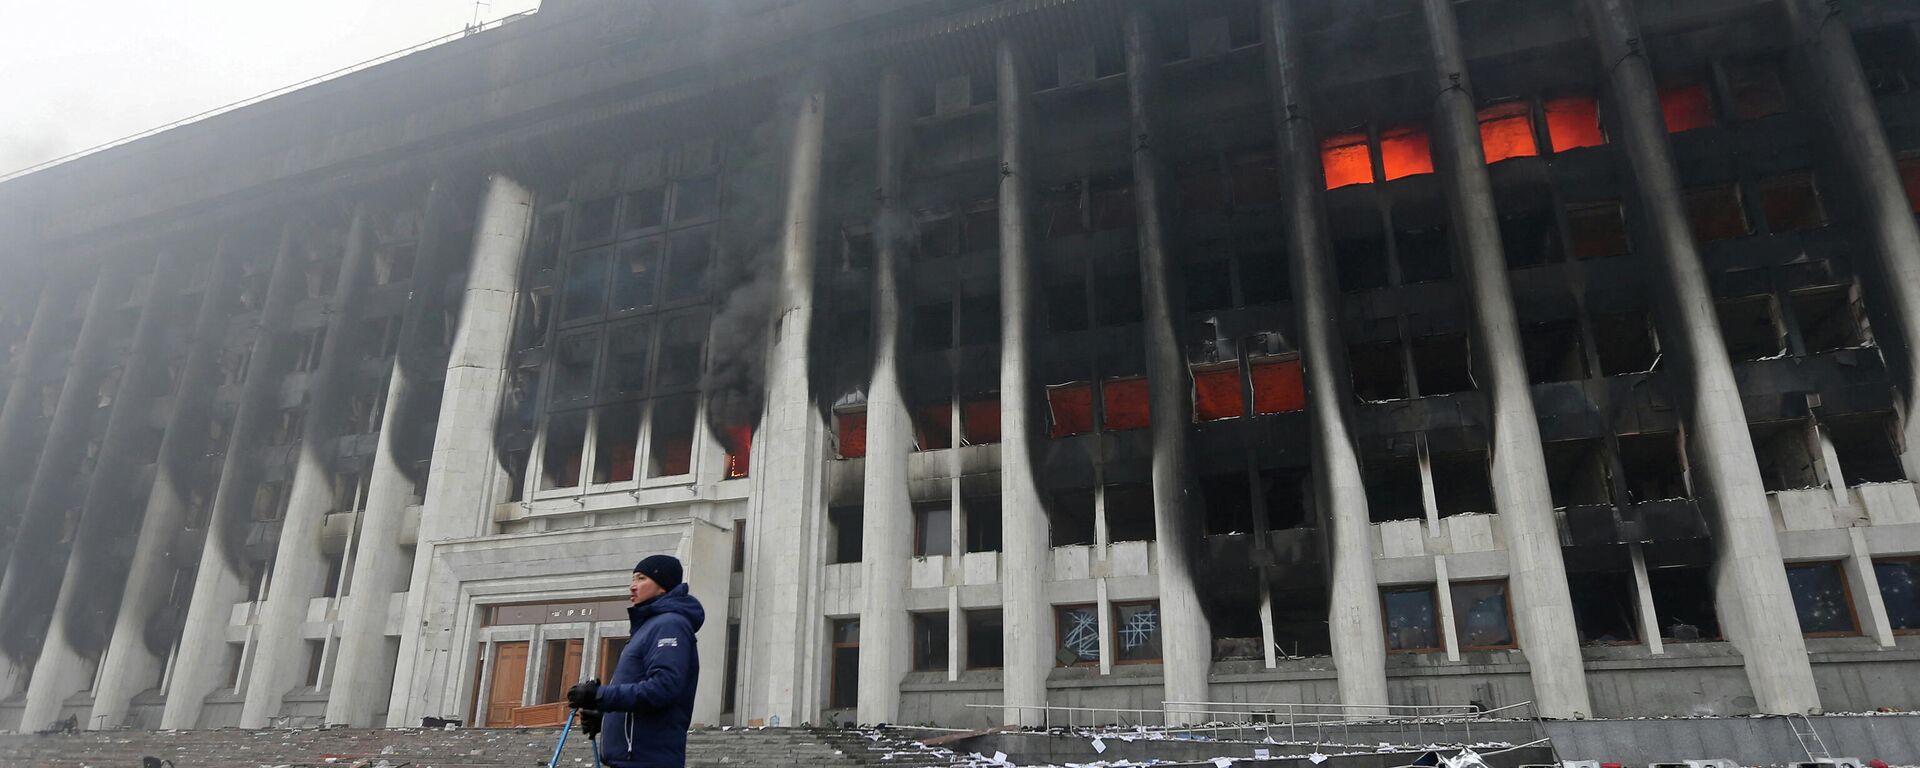 Разоренное здание мэрии Алма-Аты во время протестов, 6 января 2022 - Sputnik Литва, 1920, 06.01.2022